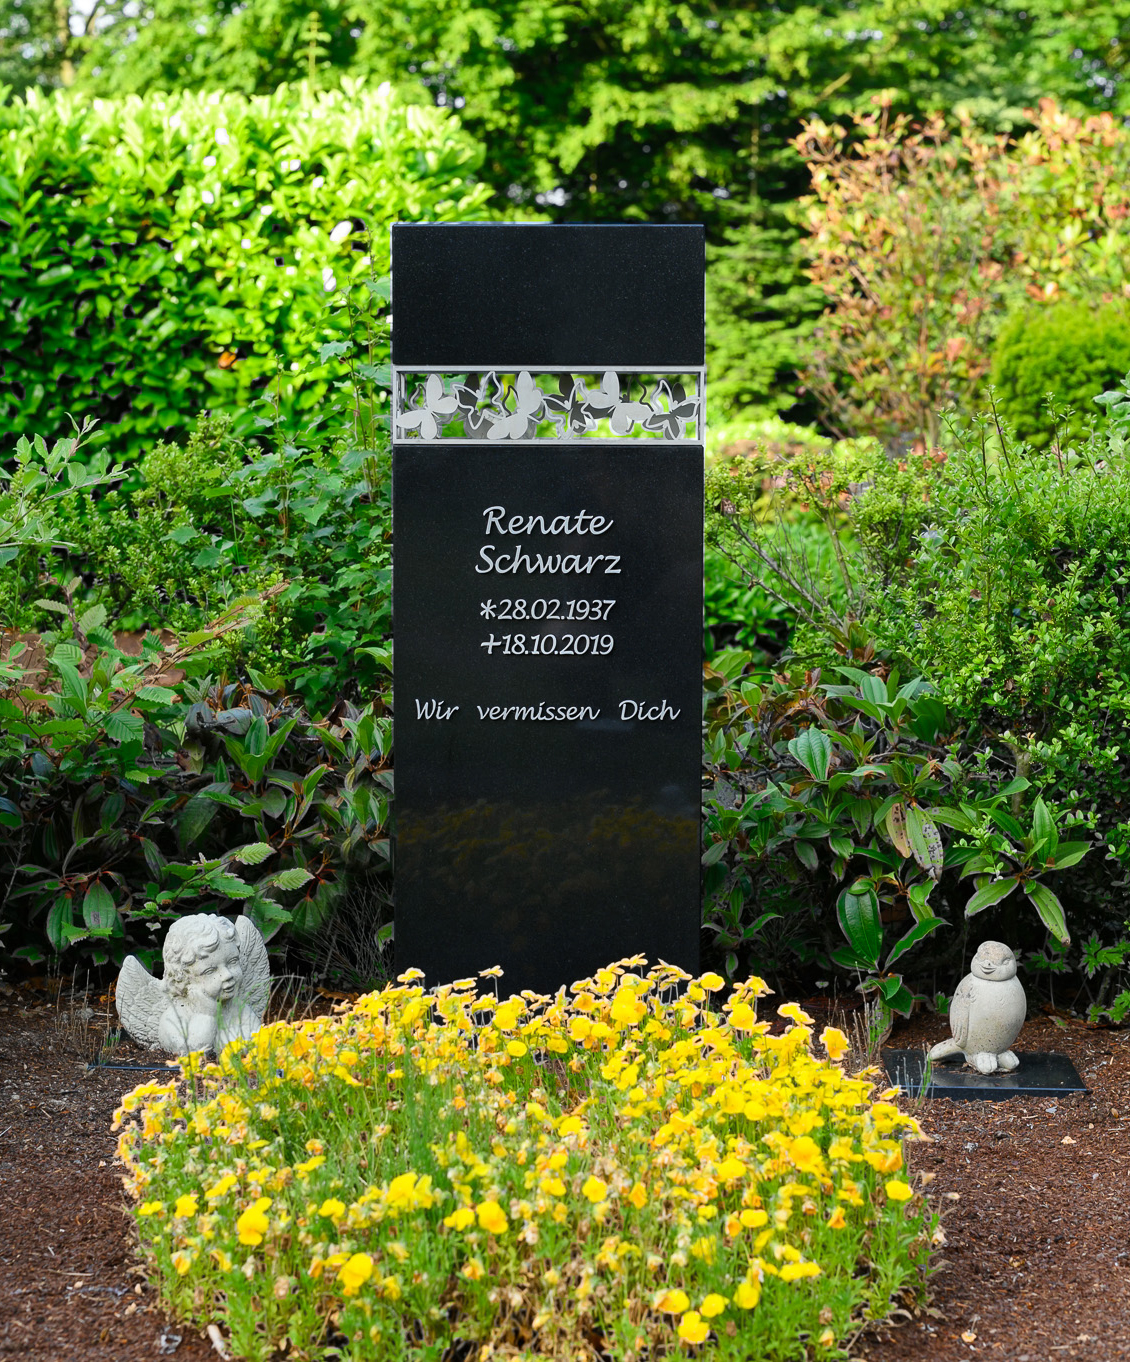 Einfache Grabgestaltung mit schwarzem Grabstein und weißen Bodendeckern. Rechts und links vom Grabstein stehen kleine Grabfiguren.